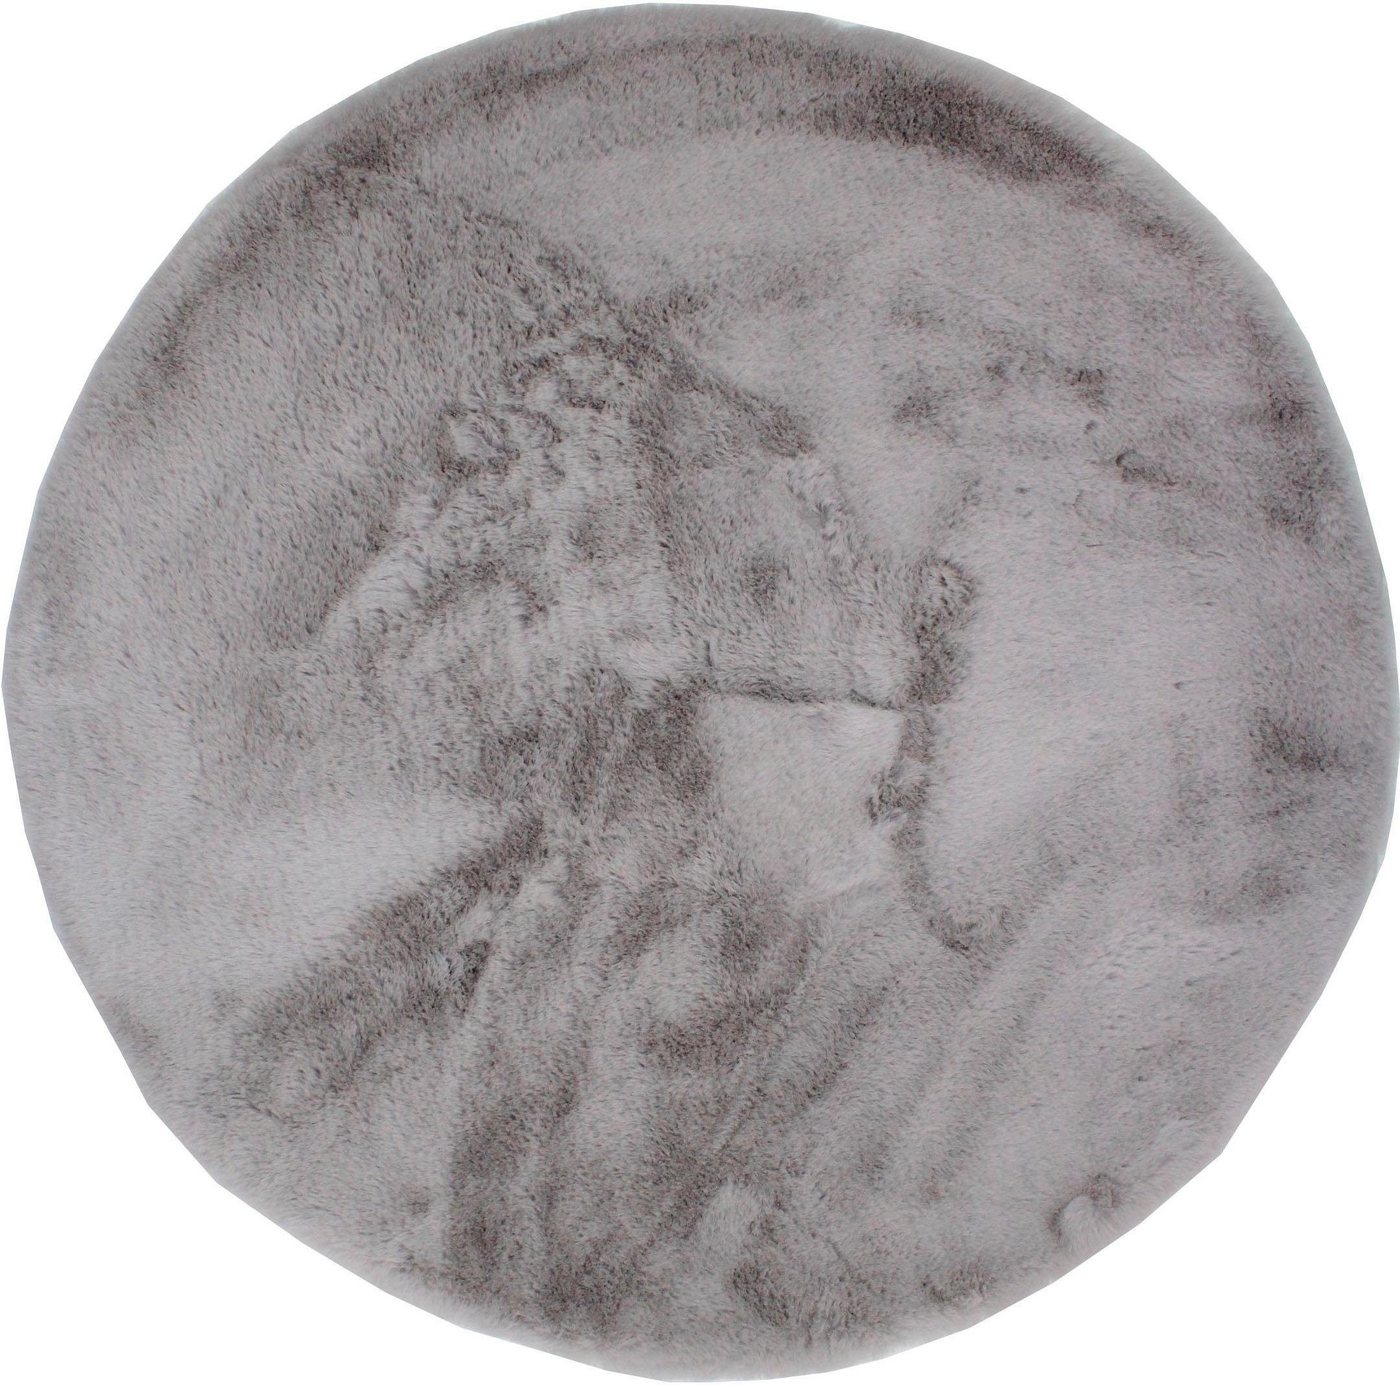 Fellteppich Roger, Dekowe, rund, Höhe: 20 mm, Kunstfell, Kaninchenfell-Haptik, ein echter Kuschelteppich von Dekowe